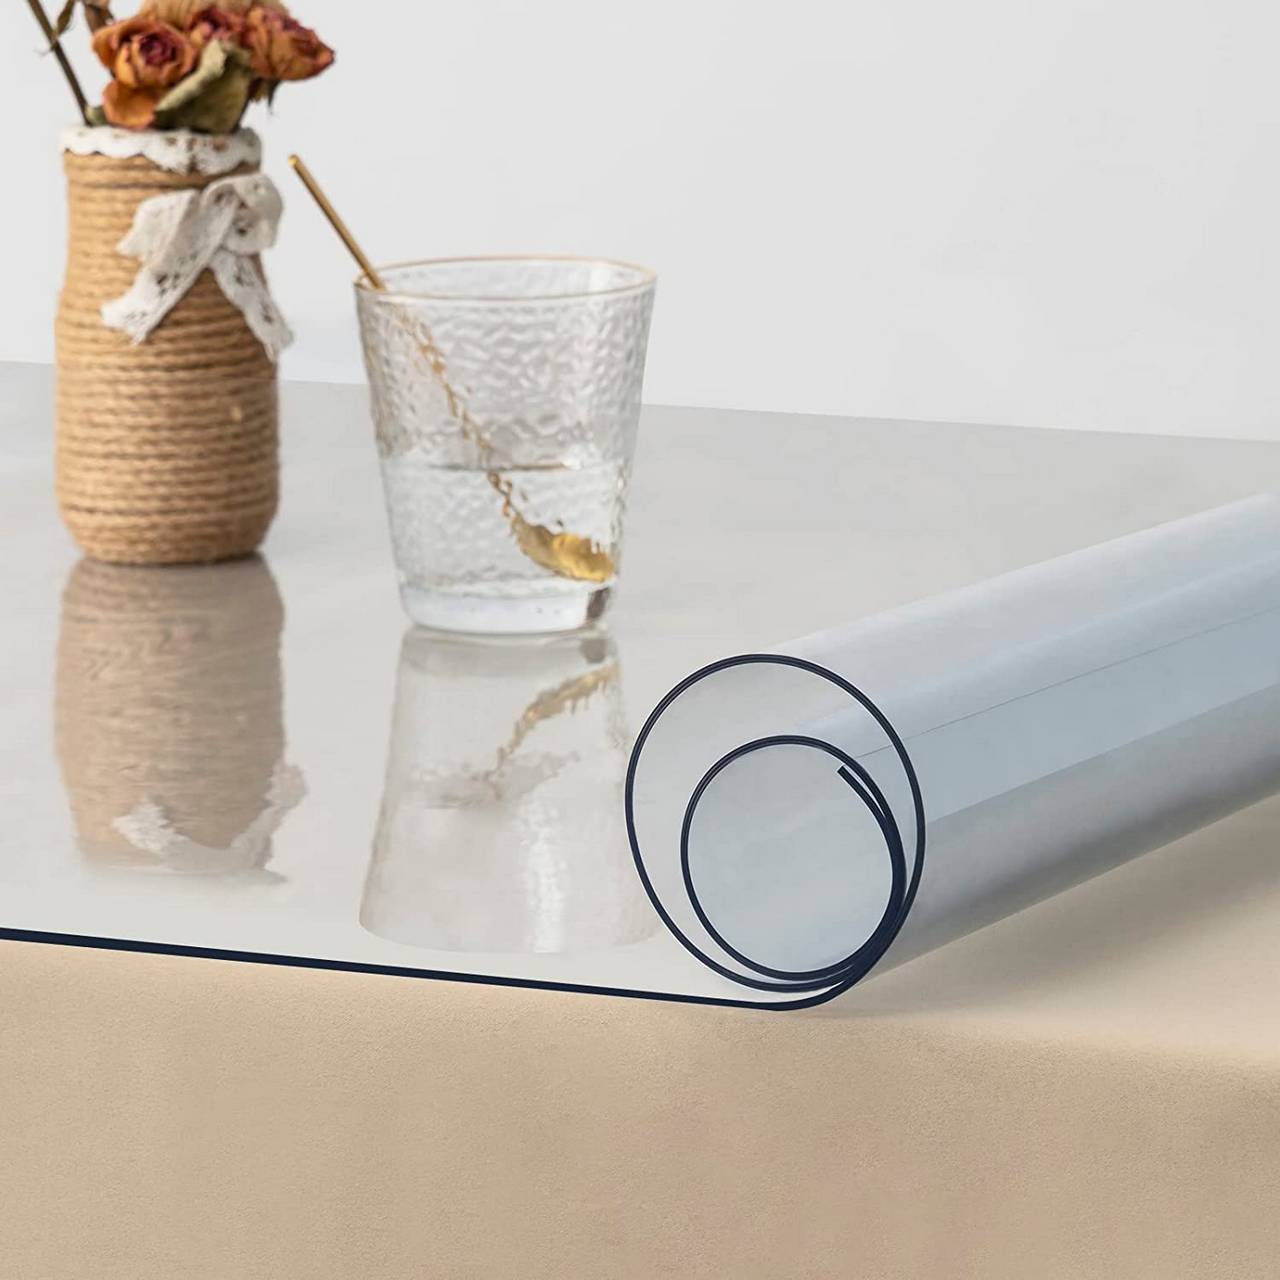 Nappe PVC transparente avec bordure en dentelle - dimensions